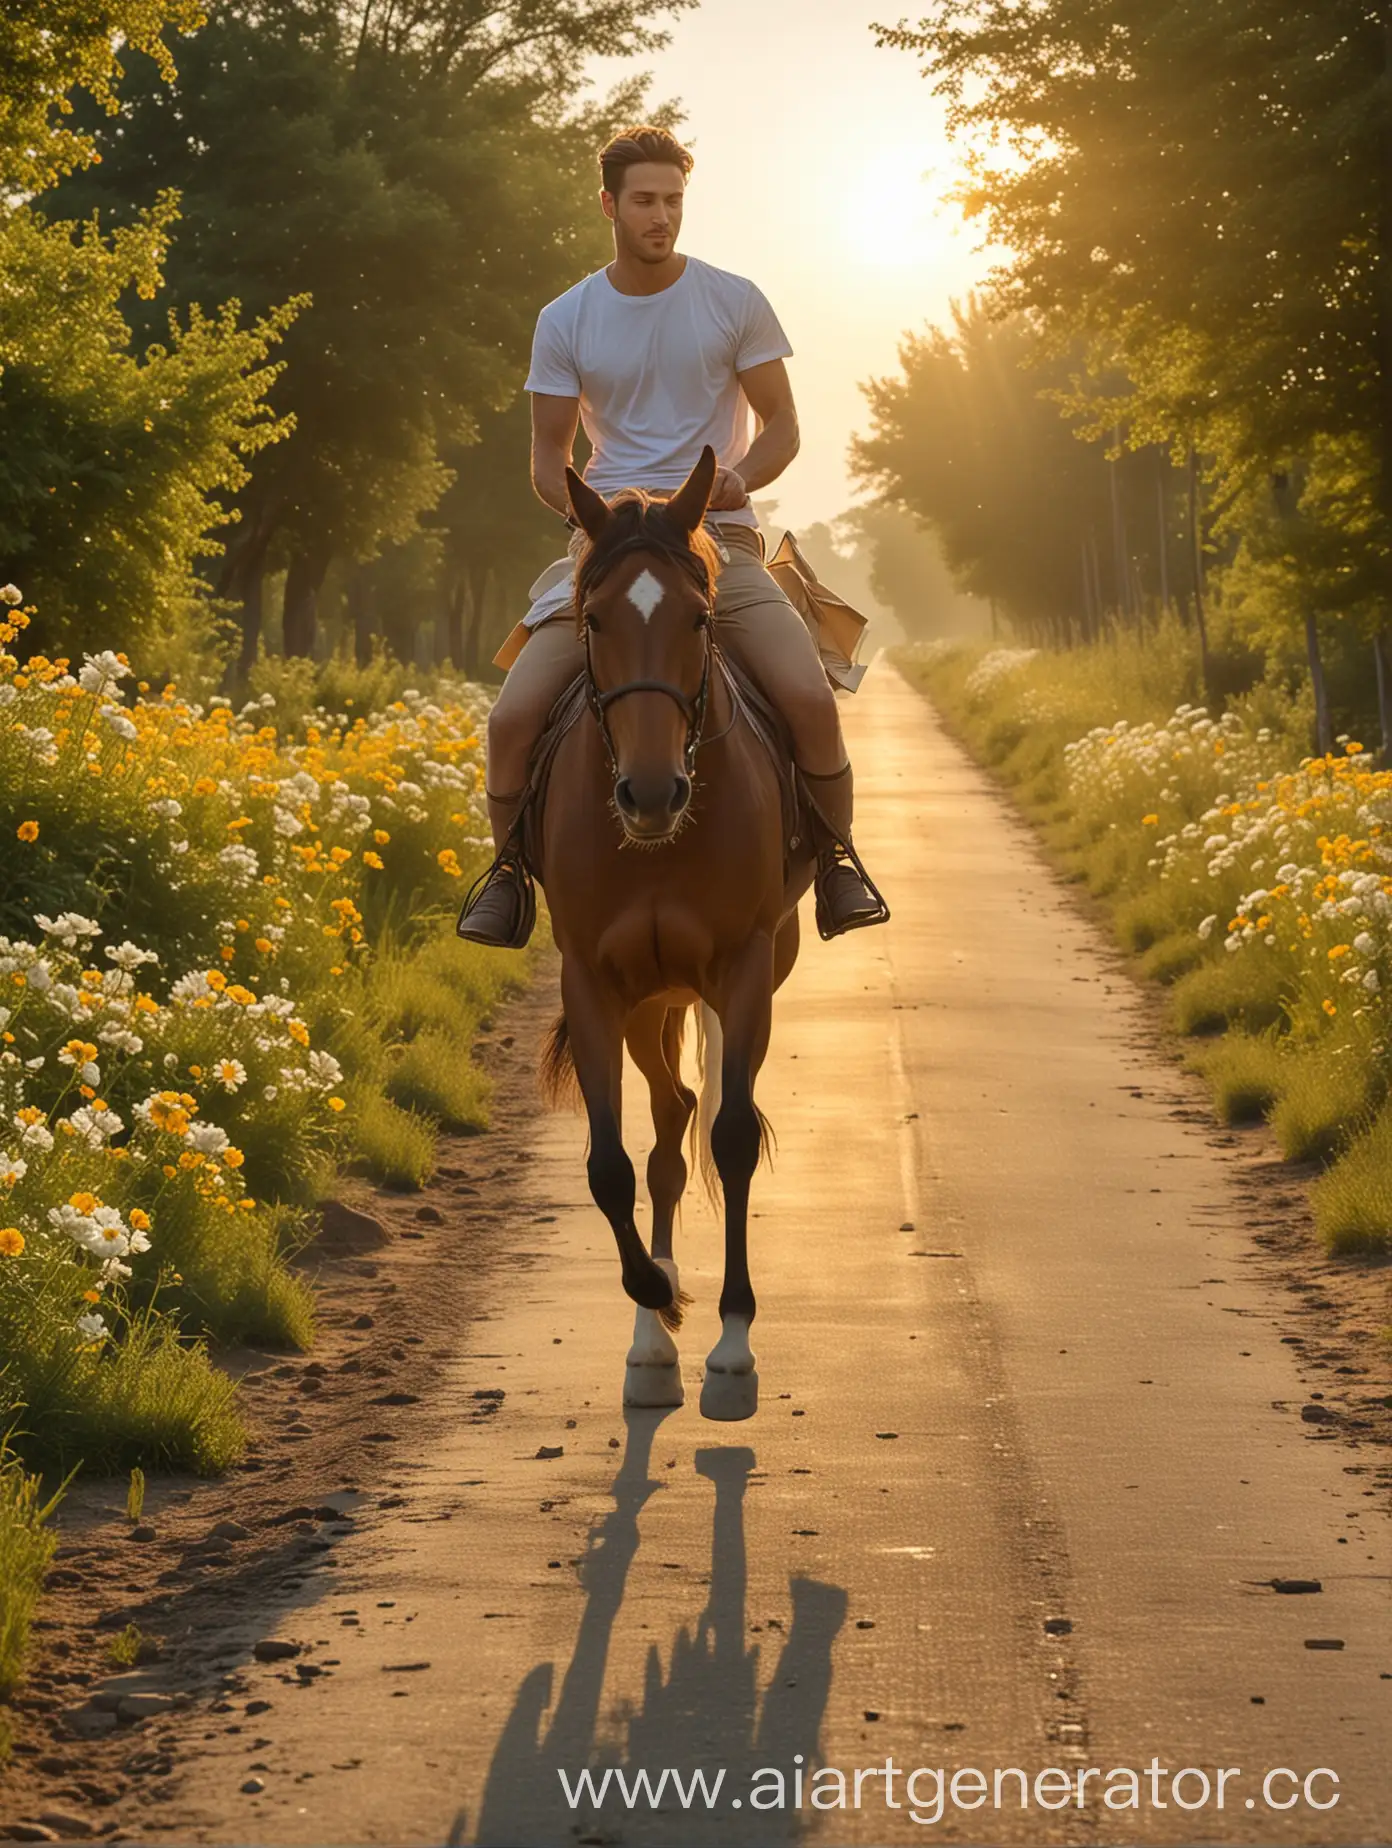 мужчина всадник в шортах и футболке, с конвертом в руке, на грациозном коне мчится по дороге.
На горизонте светится золотистый рассвет. Конь, мощный и грациозный.
Вокруг всадника цветы и цветущие поля, пышные деревья и ясное голубое небо.